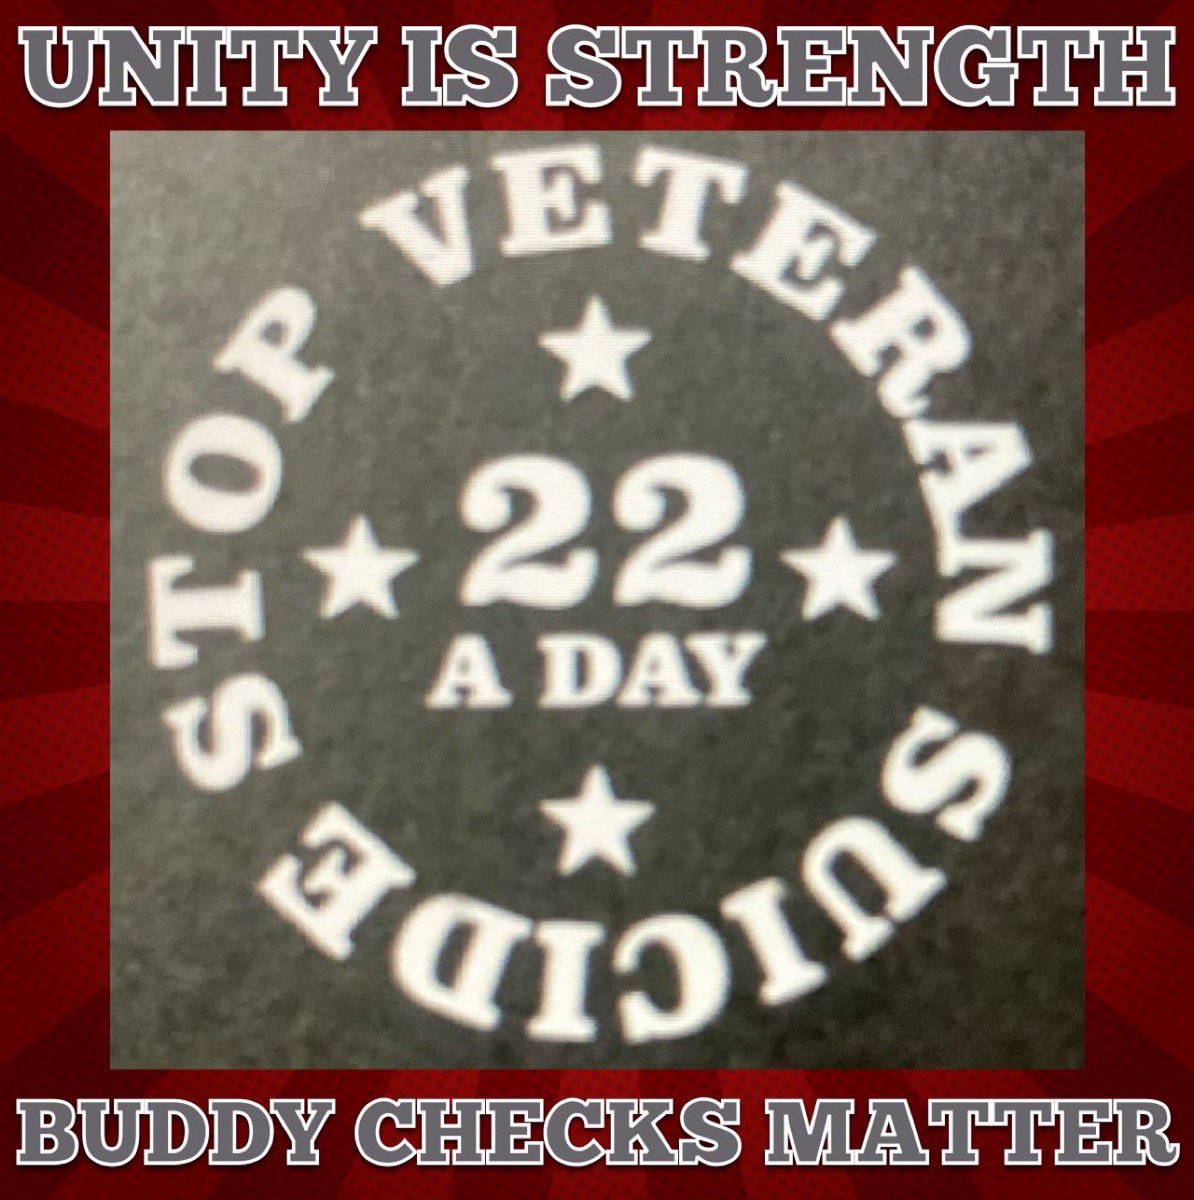 #ThankfulThursdayMorning #BuddyChecksMatter #BuddyChecks with #Veterans #BuddyCheckers👇#turn22to0 
🇺🇸@mil_vet17 @vmmtn @acls9_9 @stvwht @rg81416 @mmoyak⭐️
🇺🇸@army_abn3rdTime @CombatDoc4 @ArmyVet971⭐️
🇺🇸@Tacoma1776 @MAC_ARMY1 @DJC2814 @FawnMacMT⭐️
🇺🇸@USAVet_5 @cesheldon1⭐️